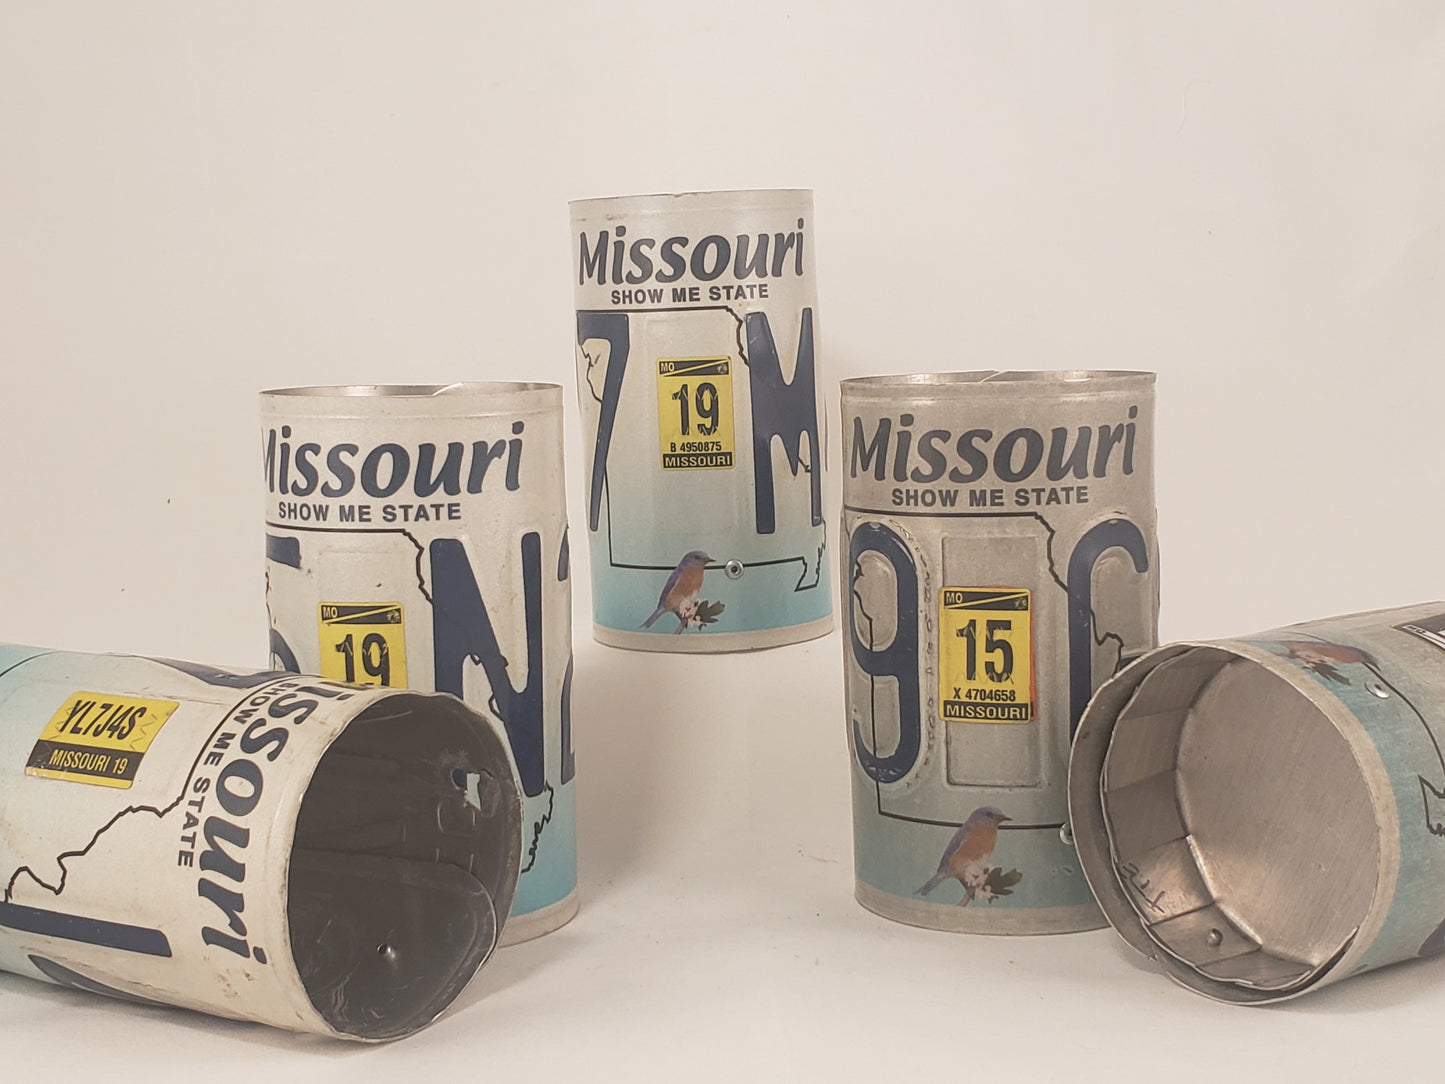 Missouri Pencil Cup